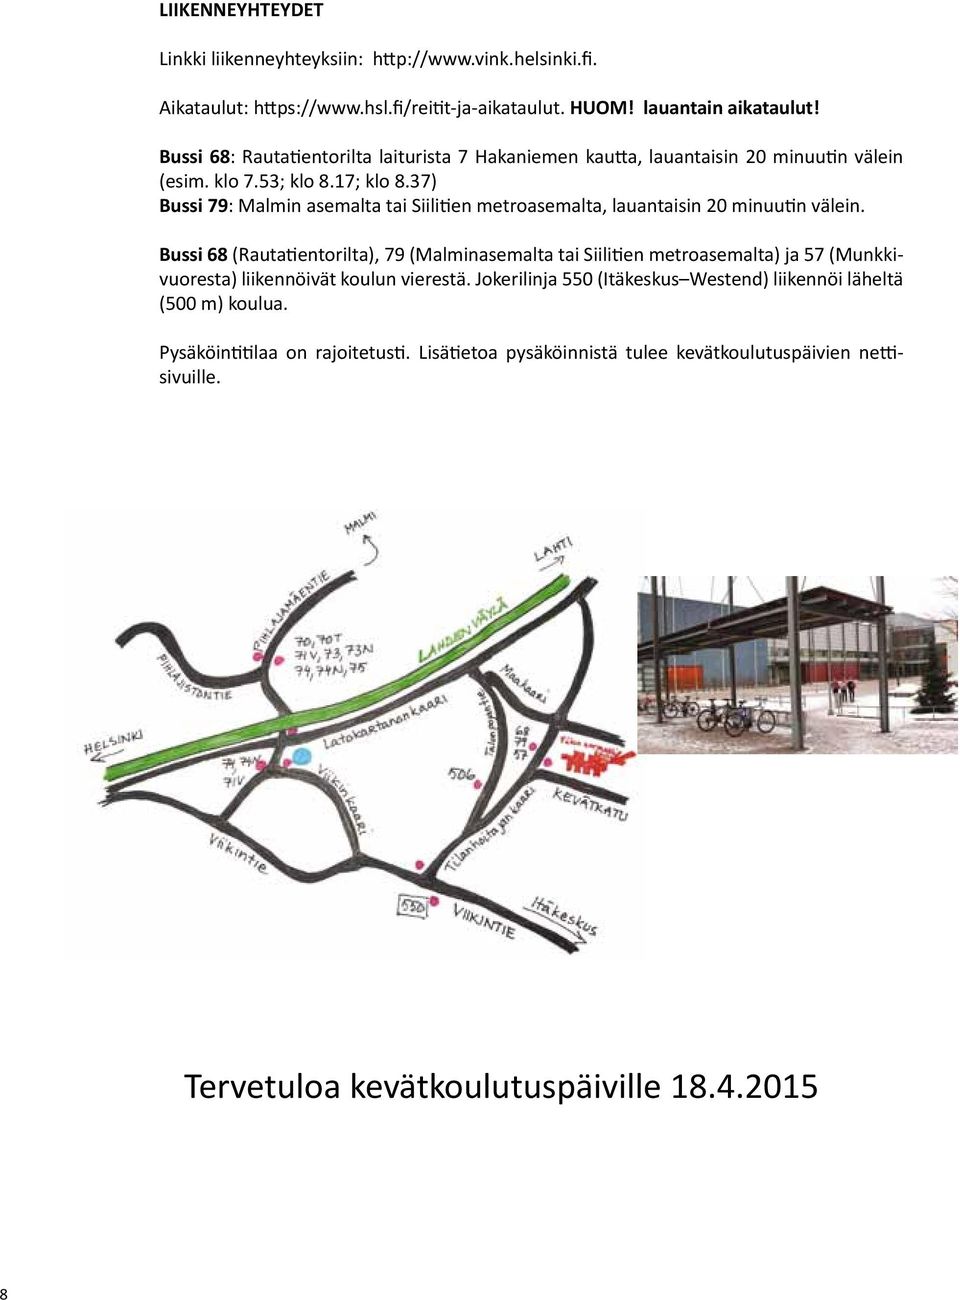 37) Bussi 79: Malmin asemalta tai Siilitien metroasemalta, lauantaisin 20 minuutin välein.